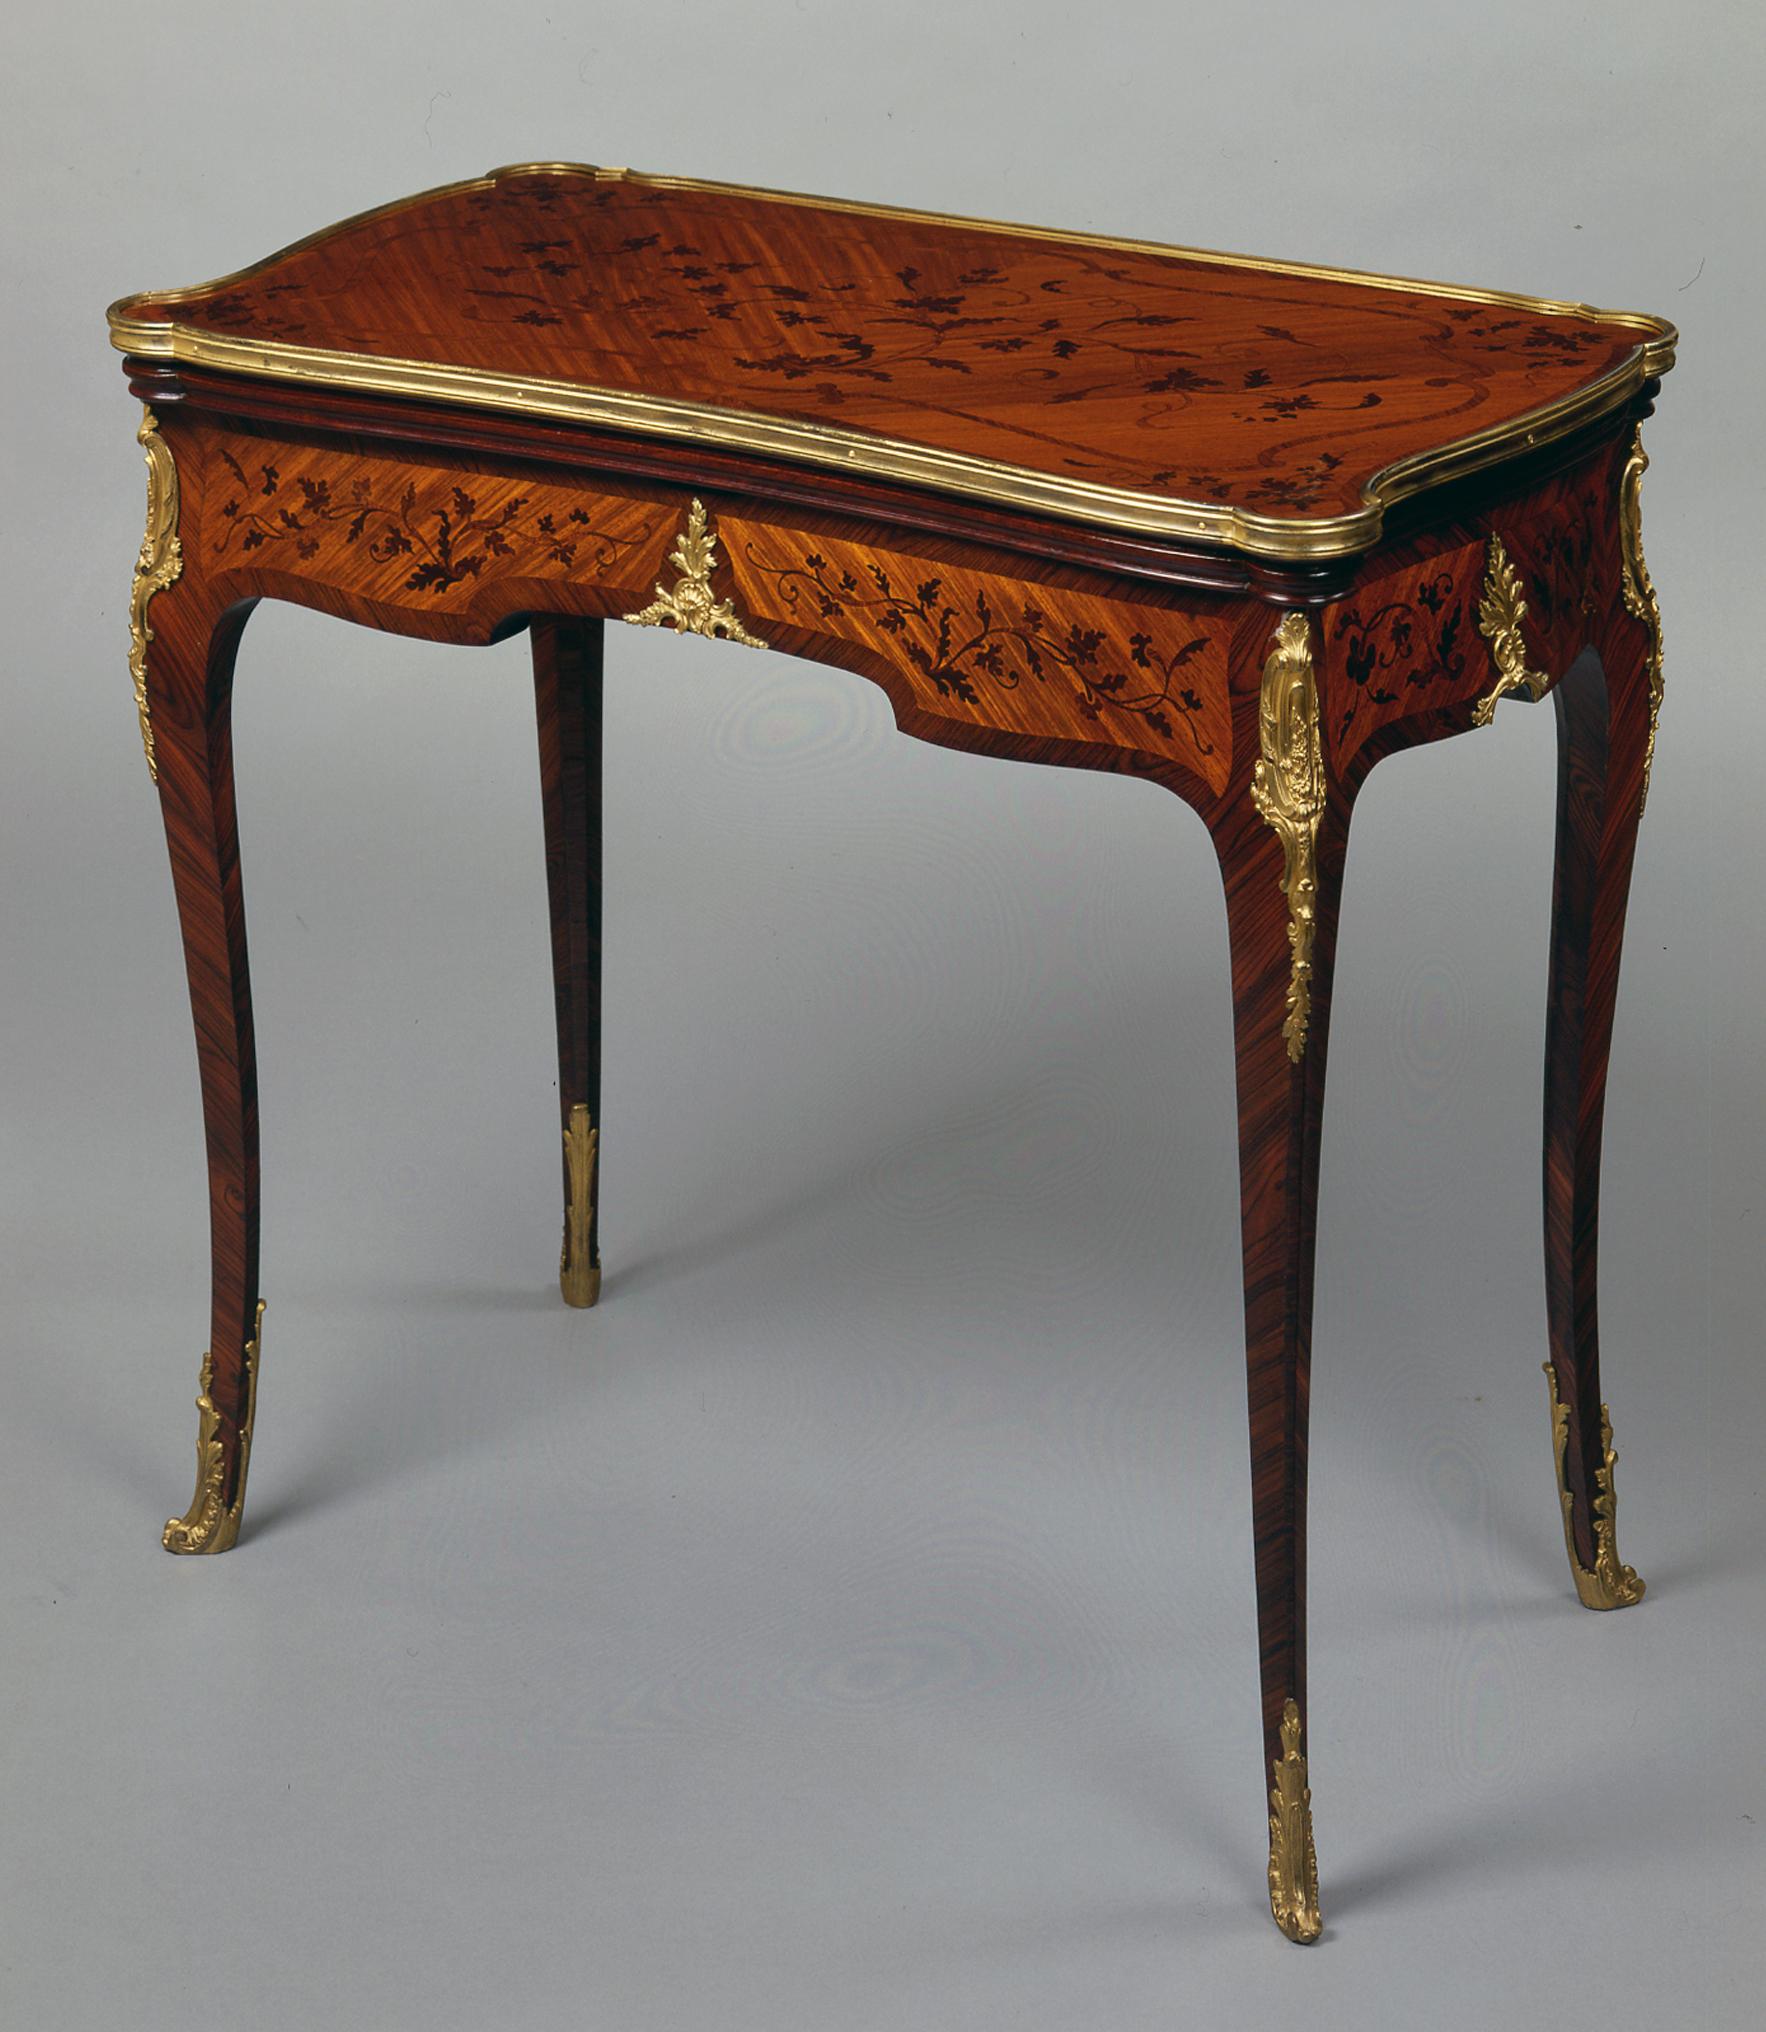 Ein Spieltisch im Stil Louis XV mit Intarsien.

Frankreich, um 1870.

Ein Louis XV-Stil Marqueterie Spieltisch, die geformte rechteckige Platte, mit vergoldeten gebundenen Rand, eingelegt mit zarten Blattranken über einem ähnlich eingelegten